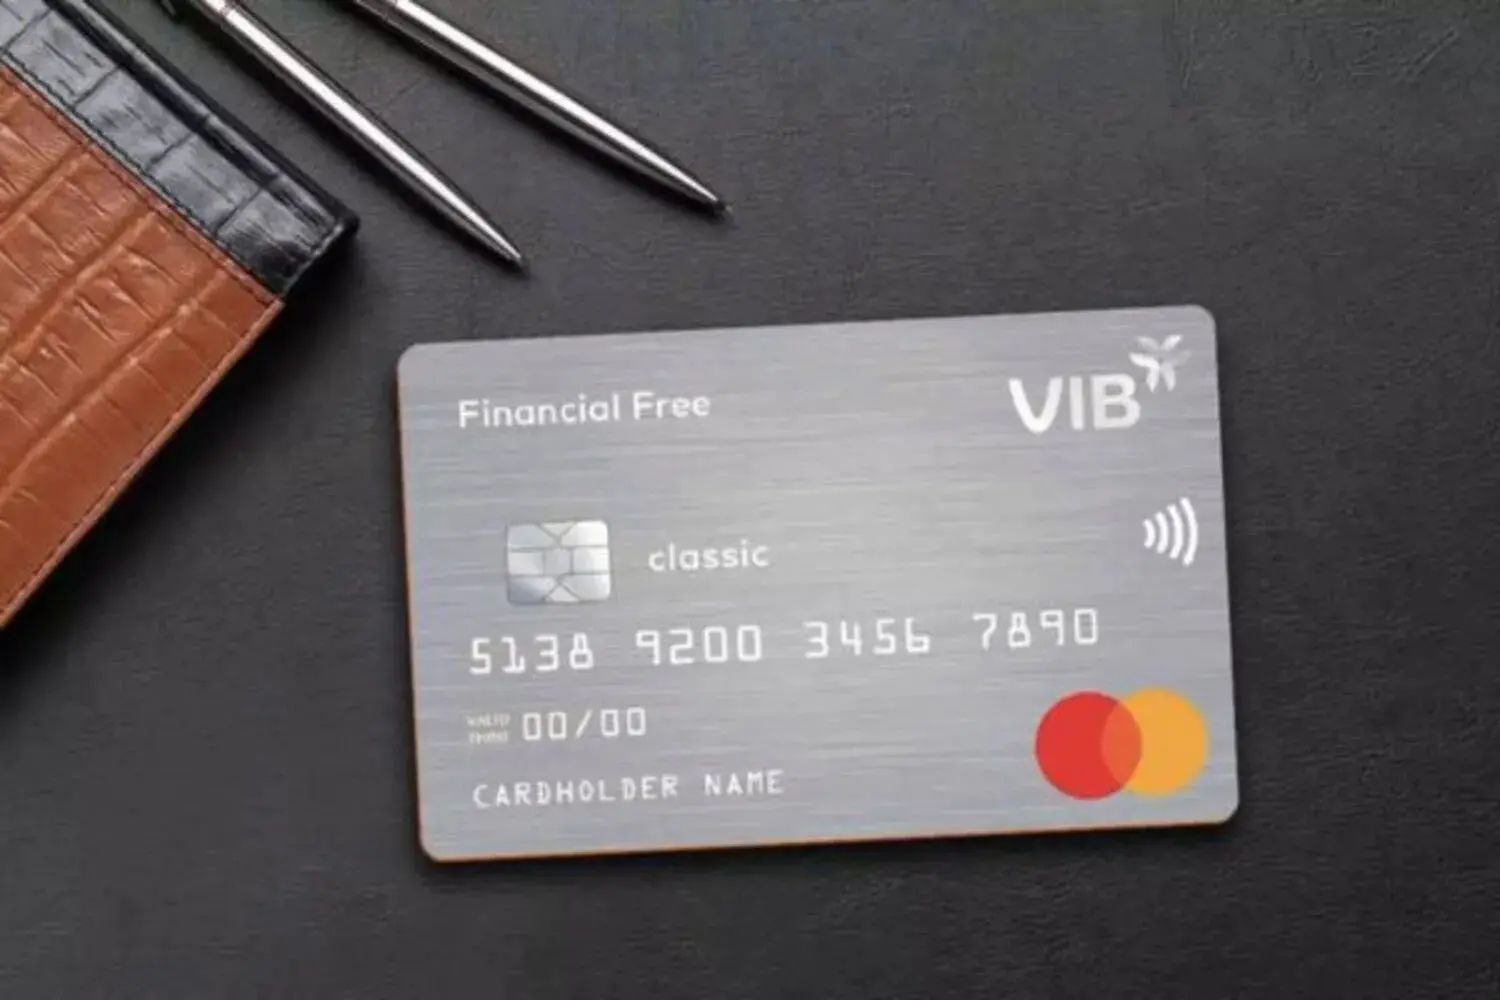 Mở thẻ VIB Financial Free để nhận được các chính sách ưu đãi bất ngờ